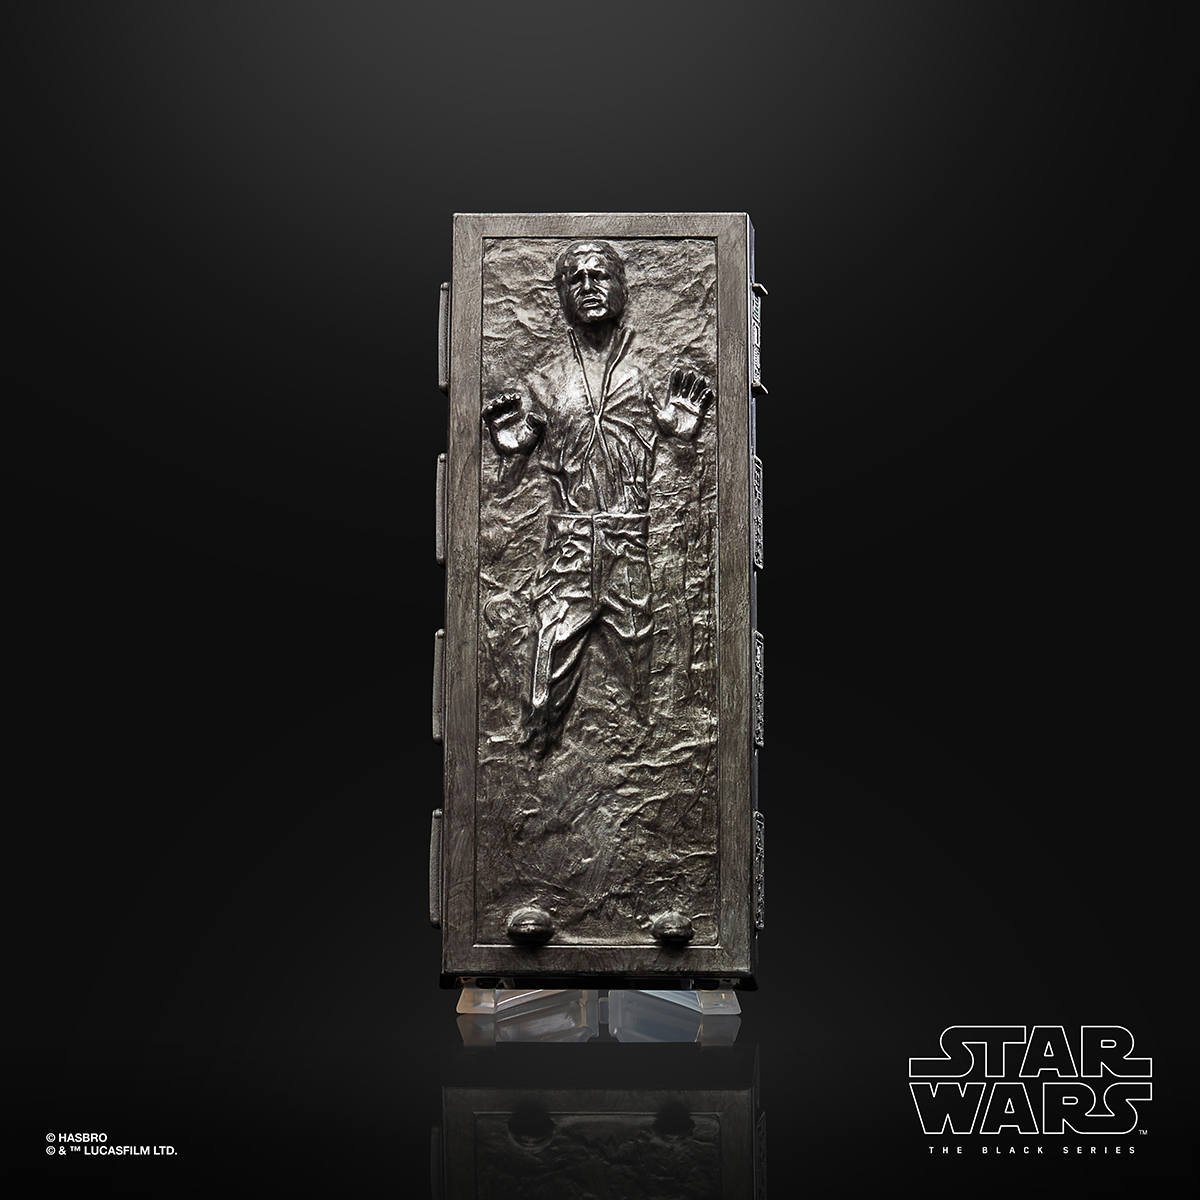 Star Wars The Black Series 6 Inch Han Solo Carbonite Figure Oop 1